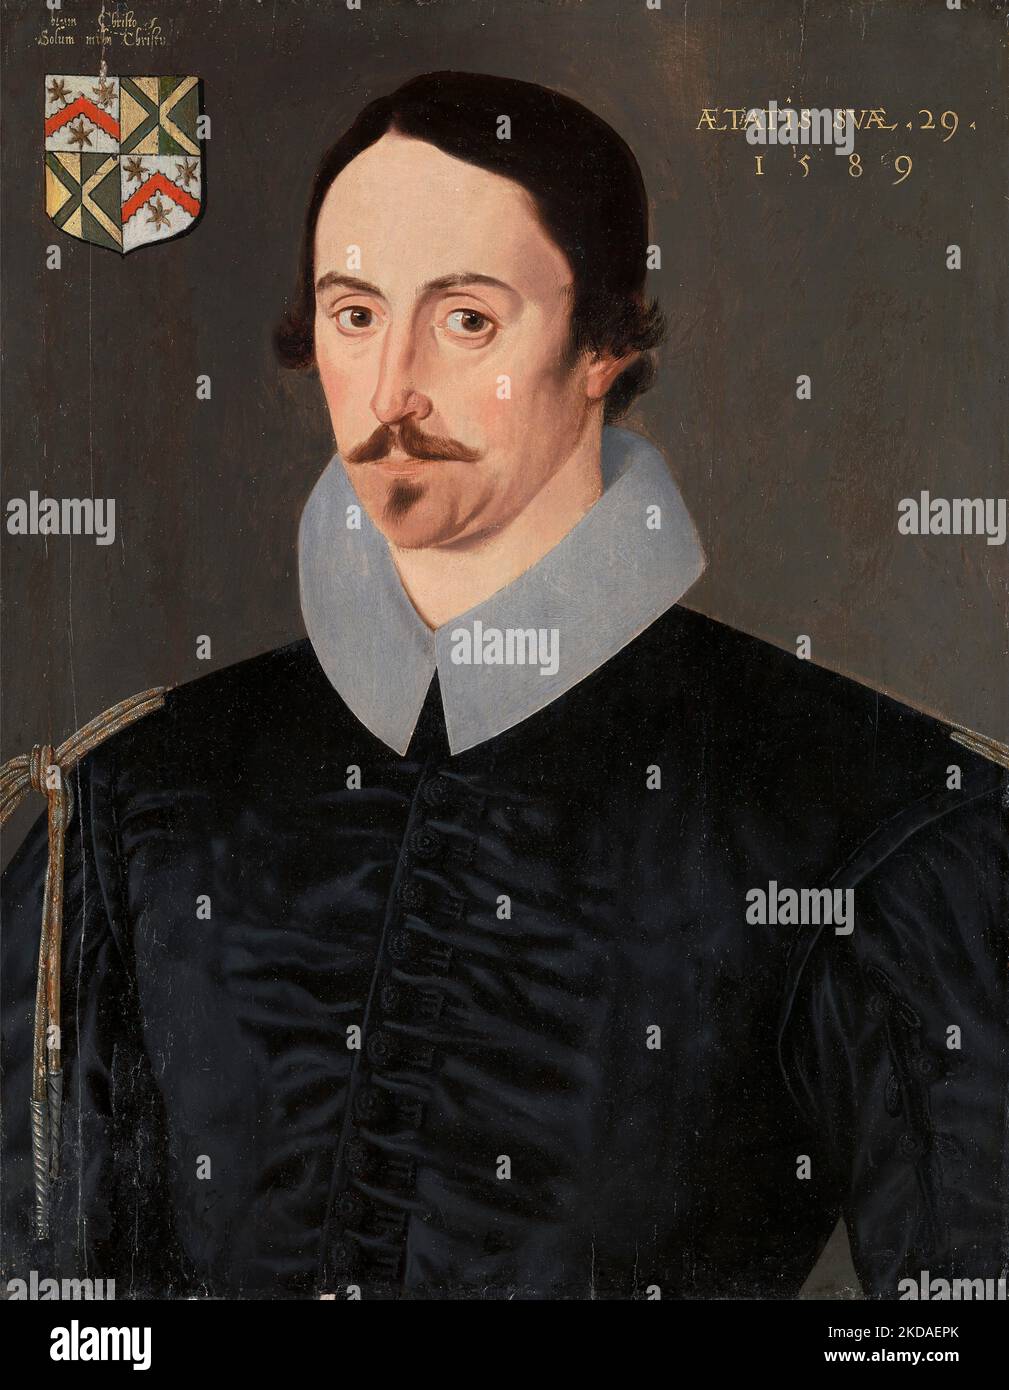 Un homme inconnu, âgé de 29 ans, peut-être de la famille Kempe. Artiste inconnu. 1589 Banque D'Images